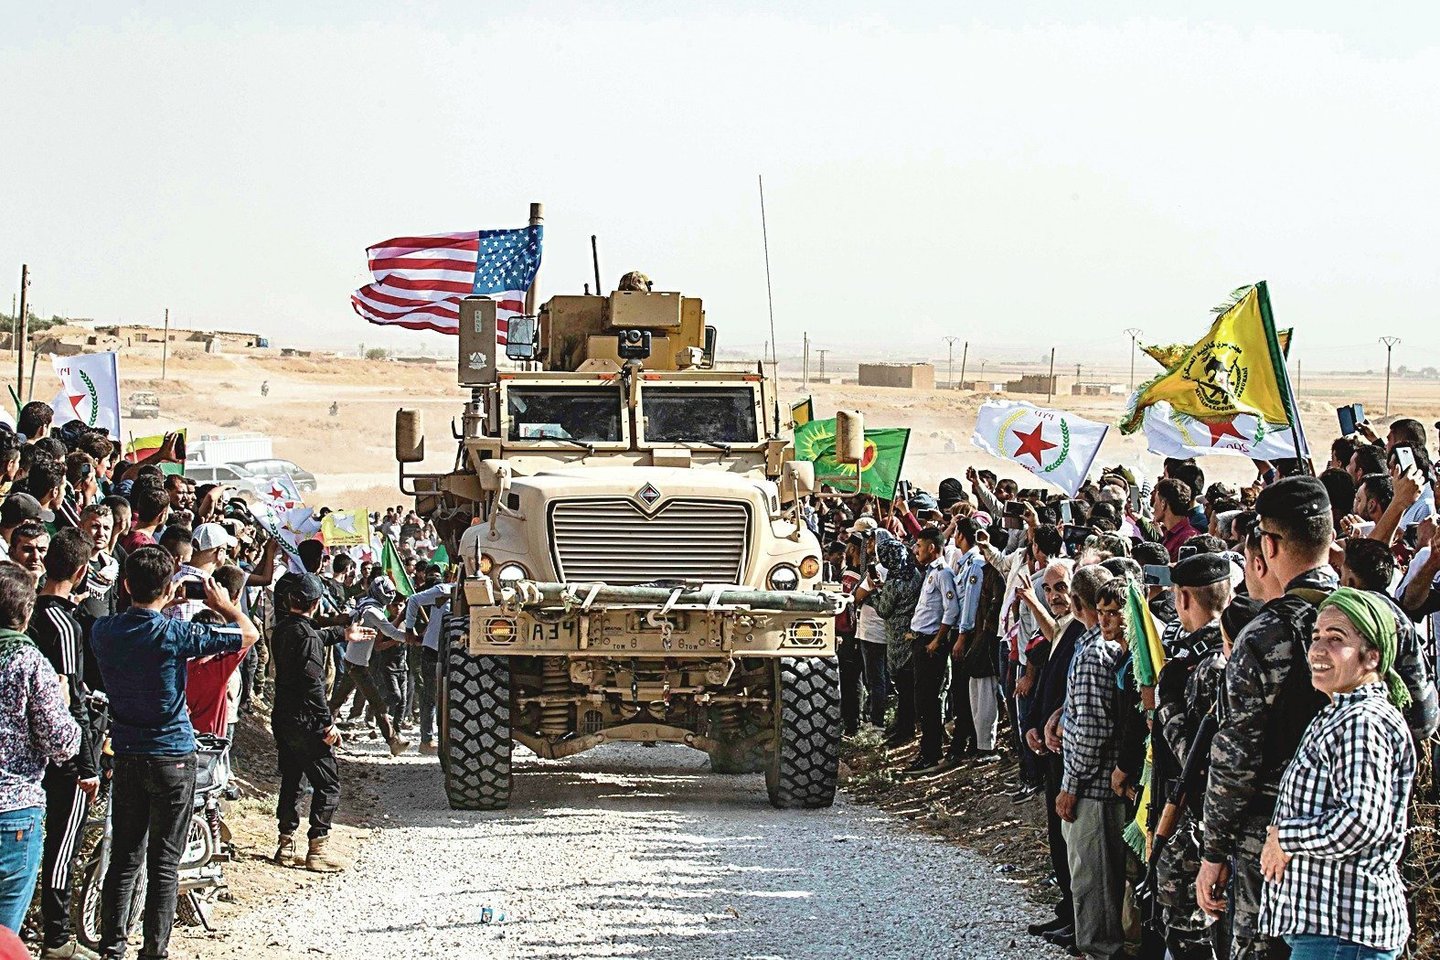 Jungtinės Valstijos vis dar bendradarbiauja su kurdų vadovaujamomis Sirijos demokratinėmis jėgomis (SDF), trečiadienį pranešė televizija NBC remdamasi amerikiečių specialiųjų pajėgų vadu Irake ir Sirijoje.<br>AFP/„Scanpix“ nuotr.